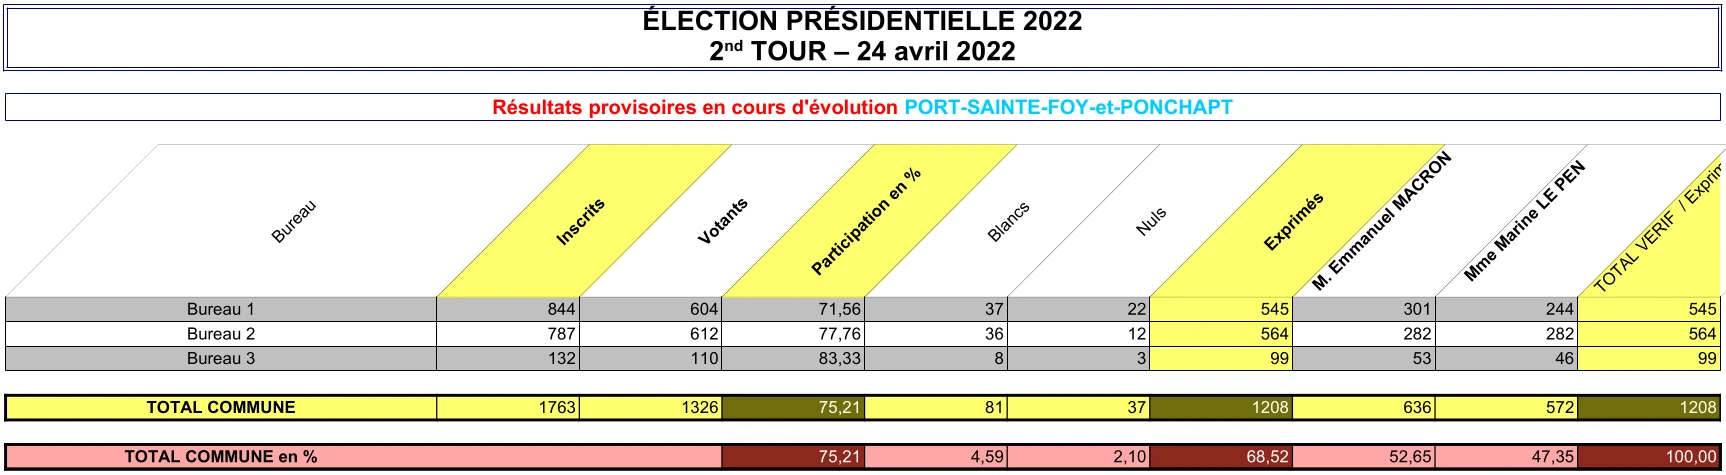 Présidentielle - 2022 - résultats 2nd tour